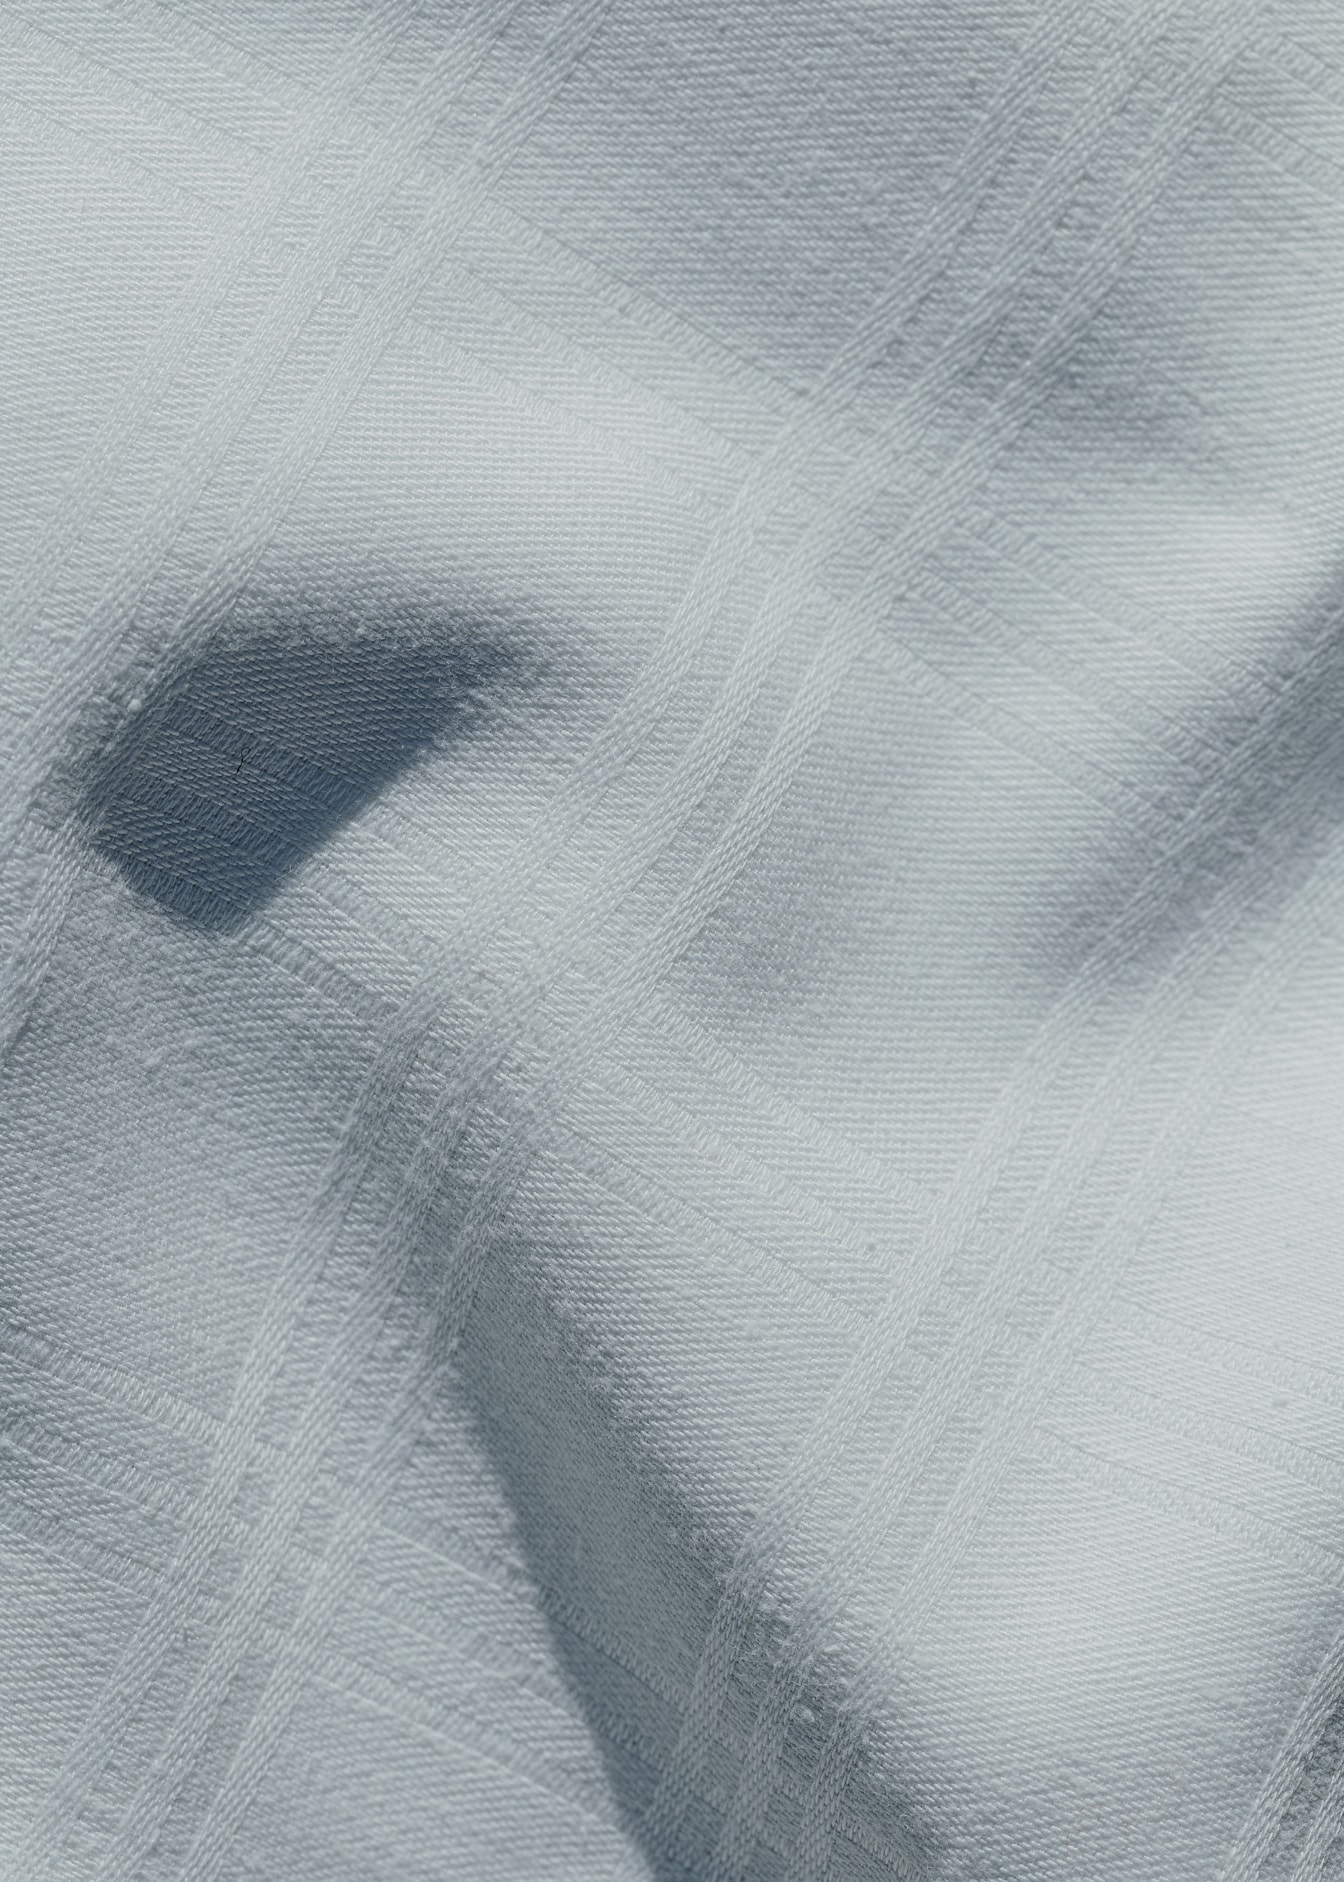 พื้นผิวของผ้าฝ้ายสีขาวที่มีลวดลายเรขาคณิตสี่เหลี่ยมผืนผ้า